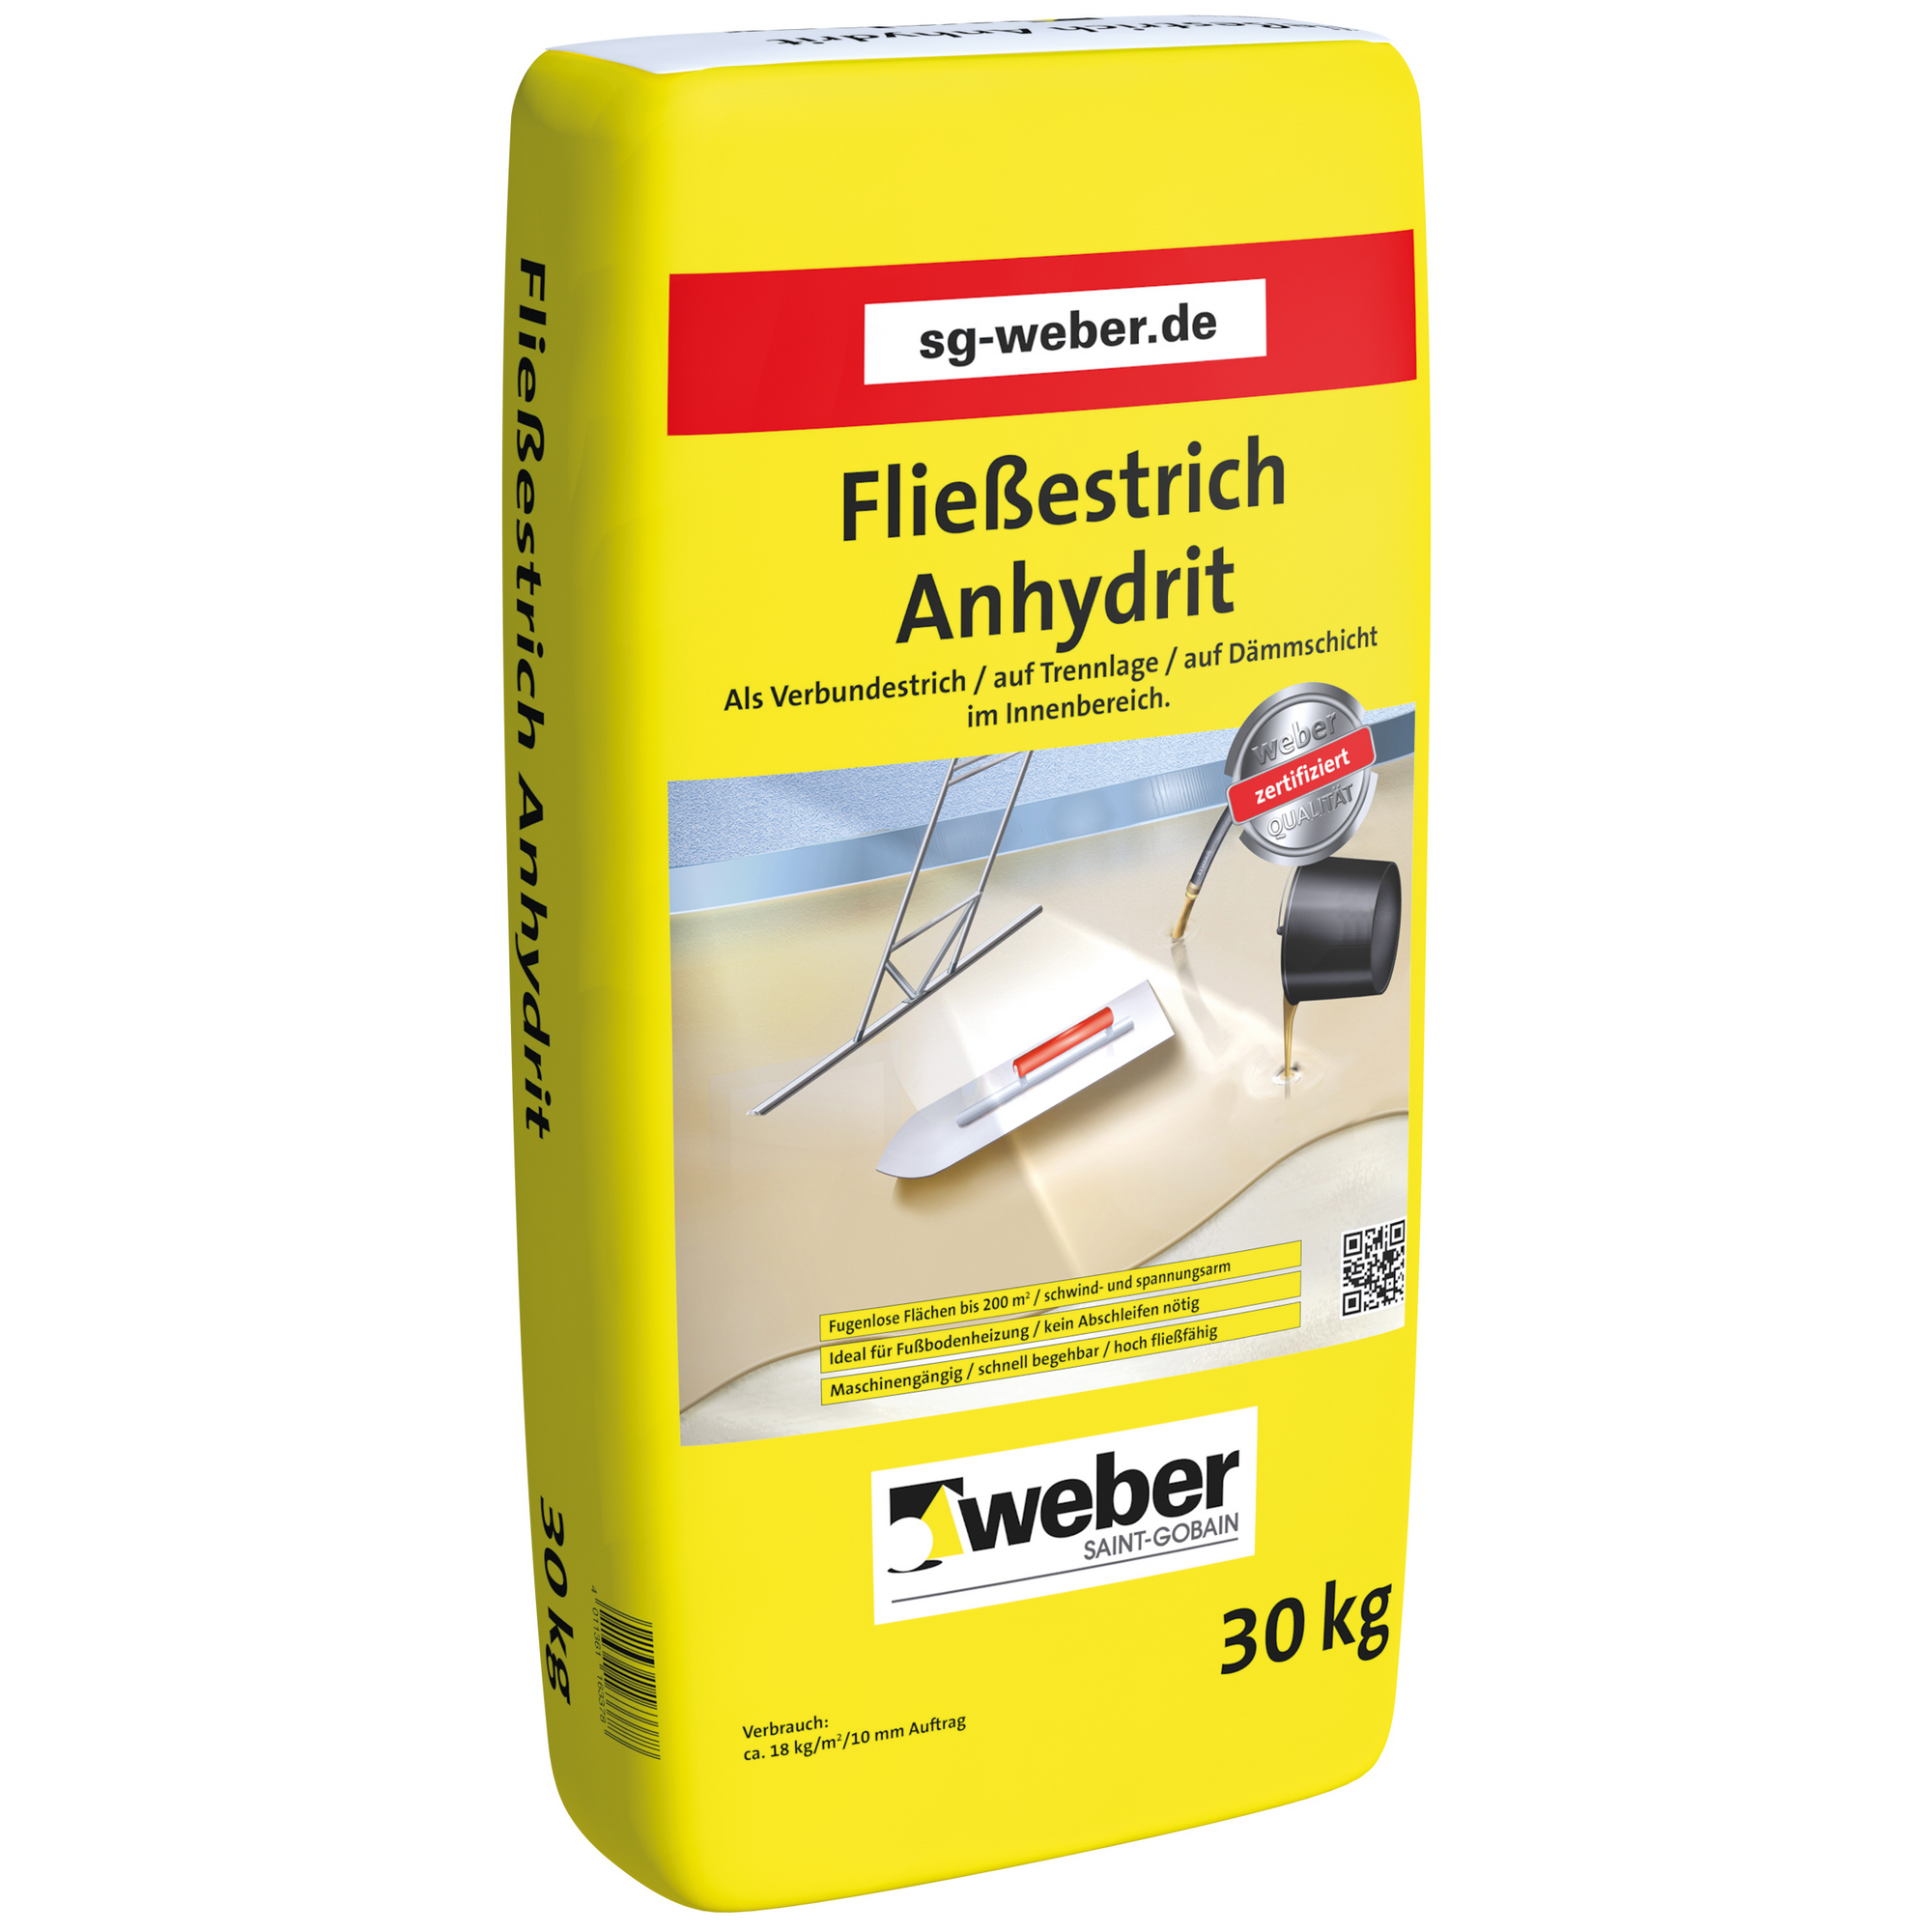 Fließestrich 30 kg + product picture